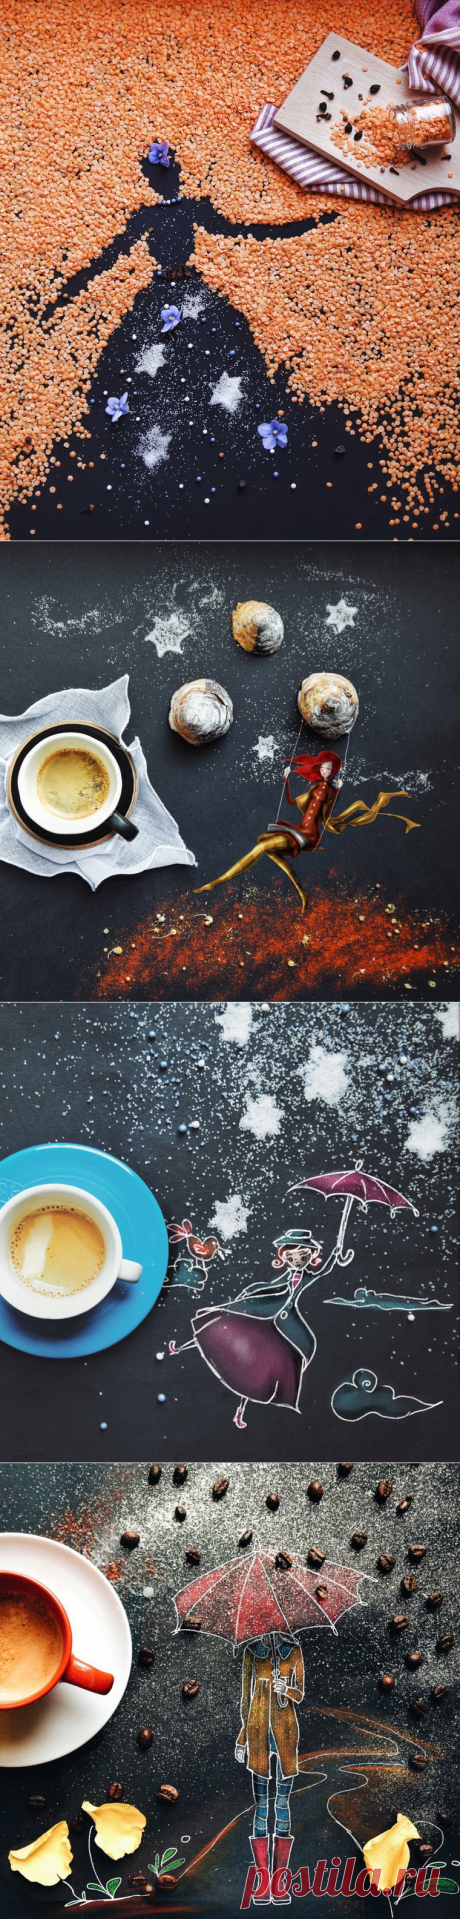 Маленькие кофейные истории-картины итальянской художницы Cinzia Bolognesi - Отраженье ясных звезд в темной воде...(БГ) — LiveJournal